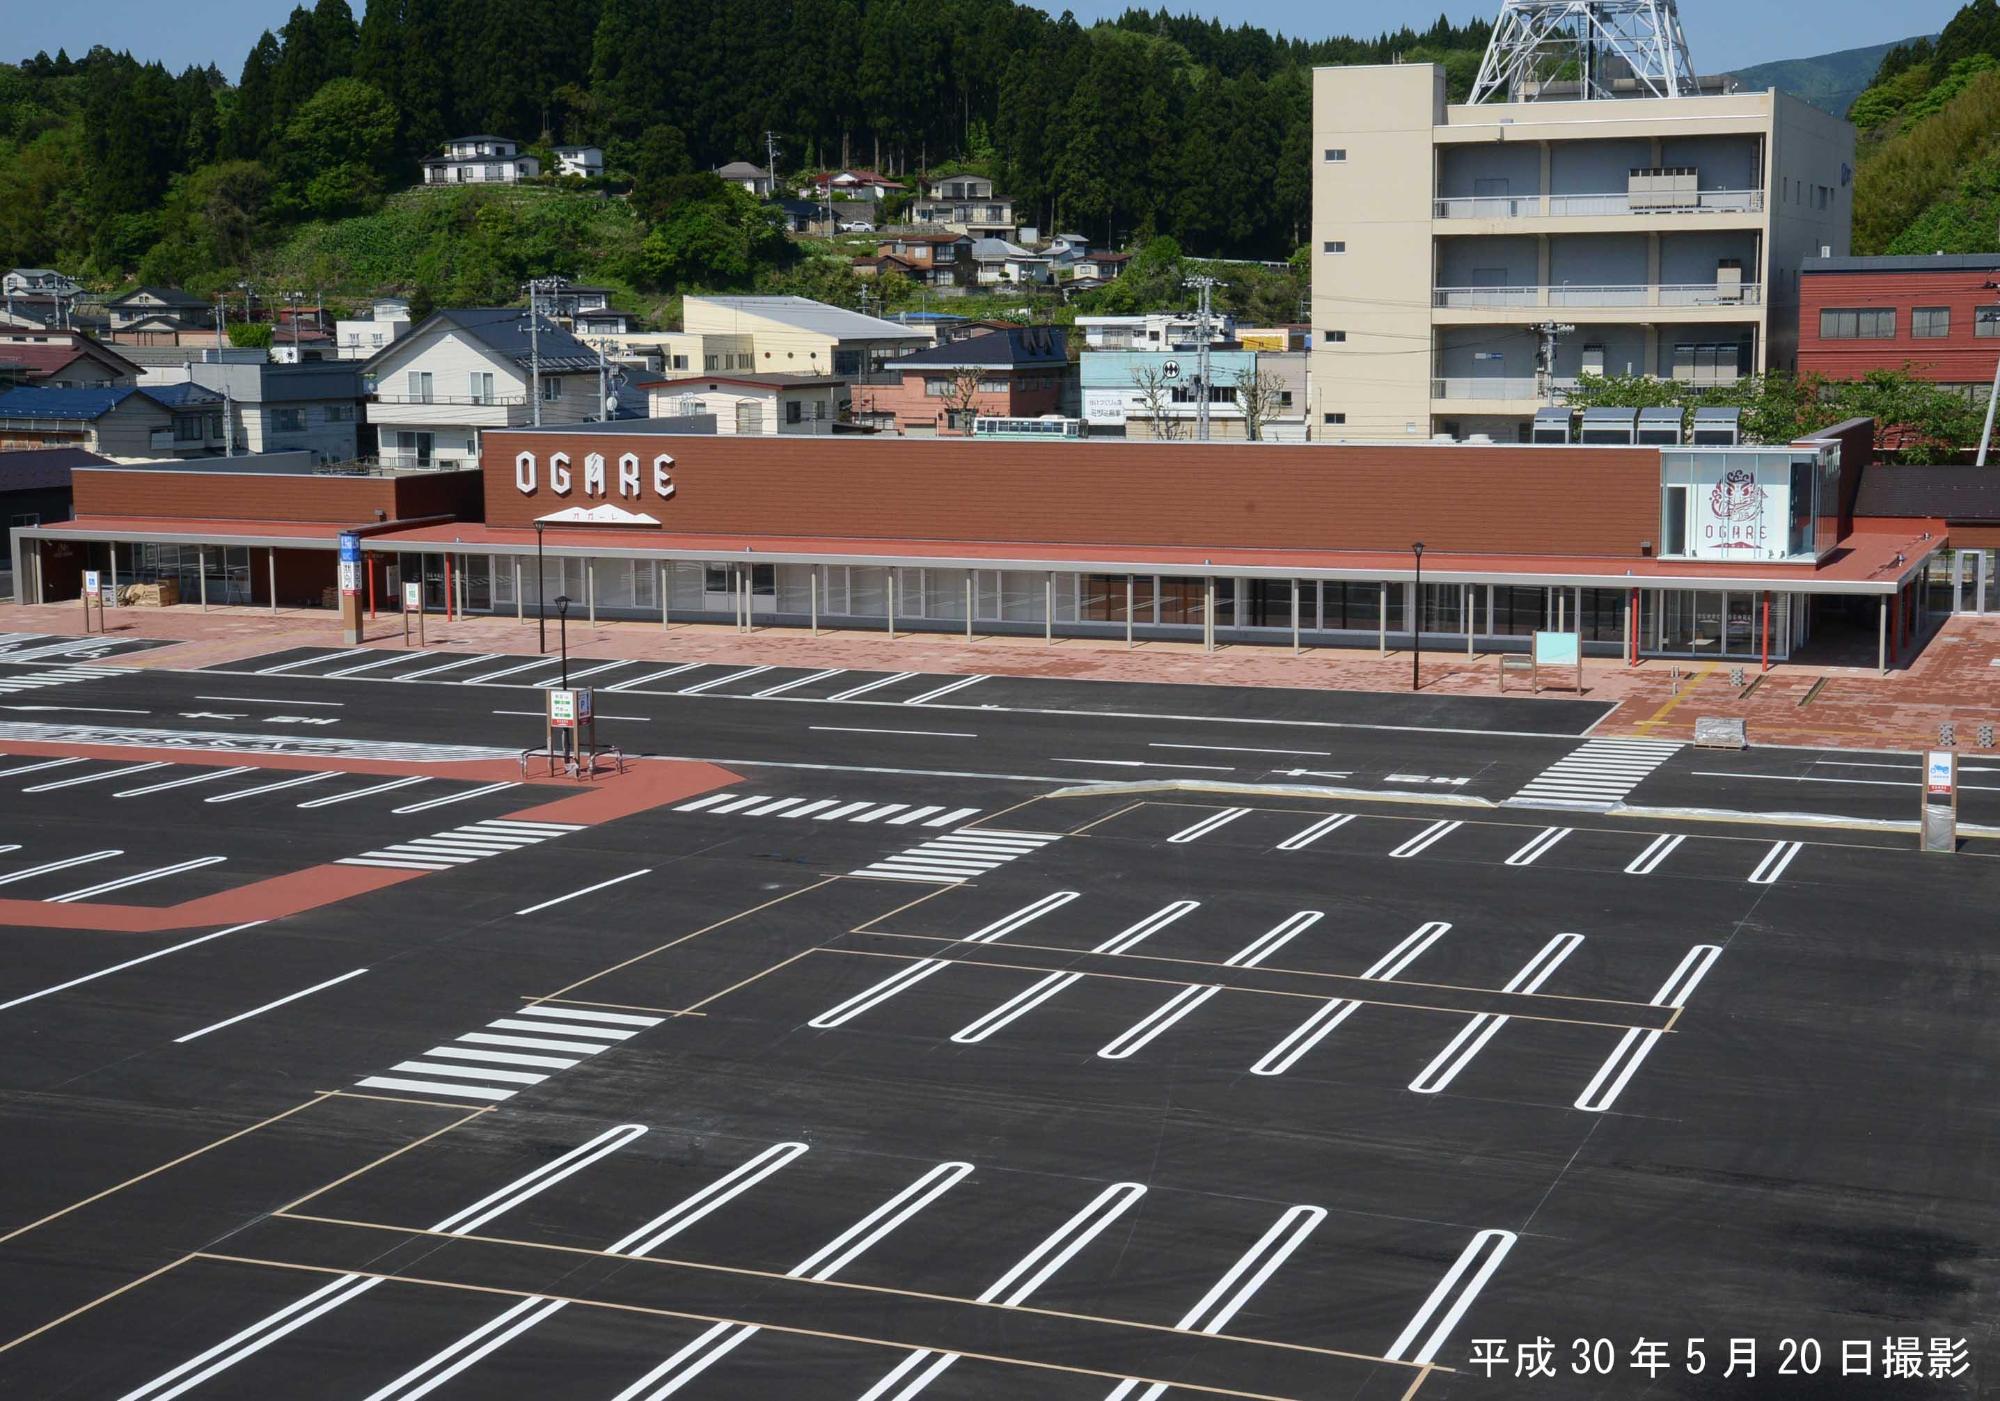 オガーレの広々とした駐車場と建物の外観を写した写真